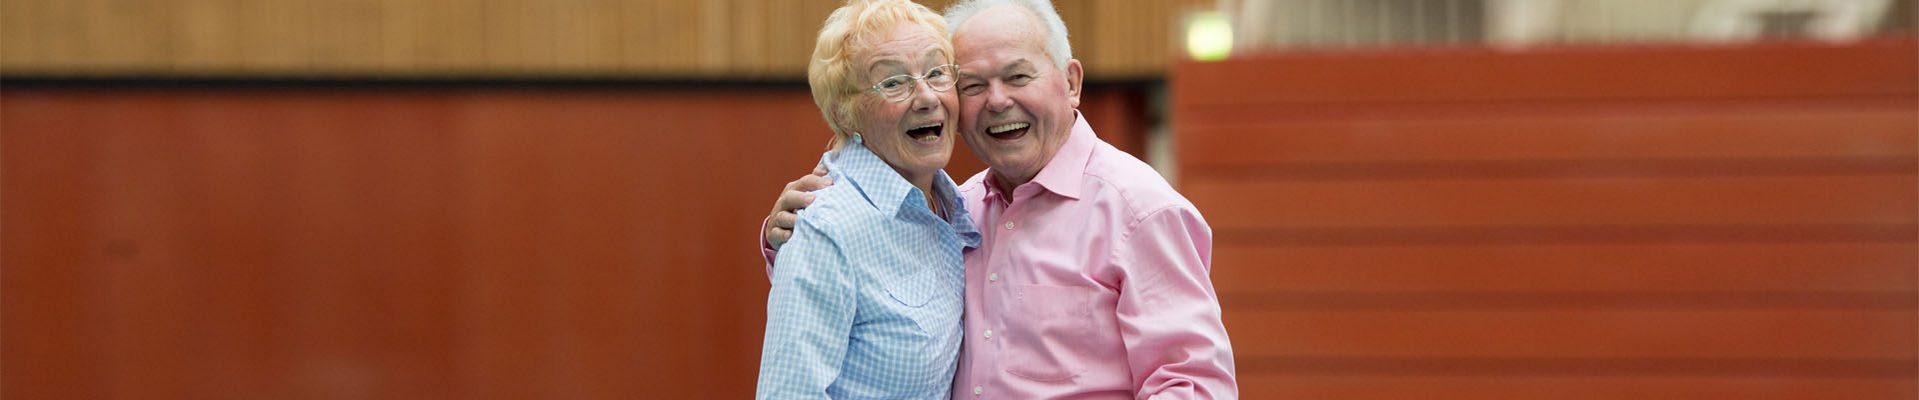 Freie Wohlfahrtspflege: Älteres Ehepaar tanzt